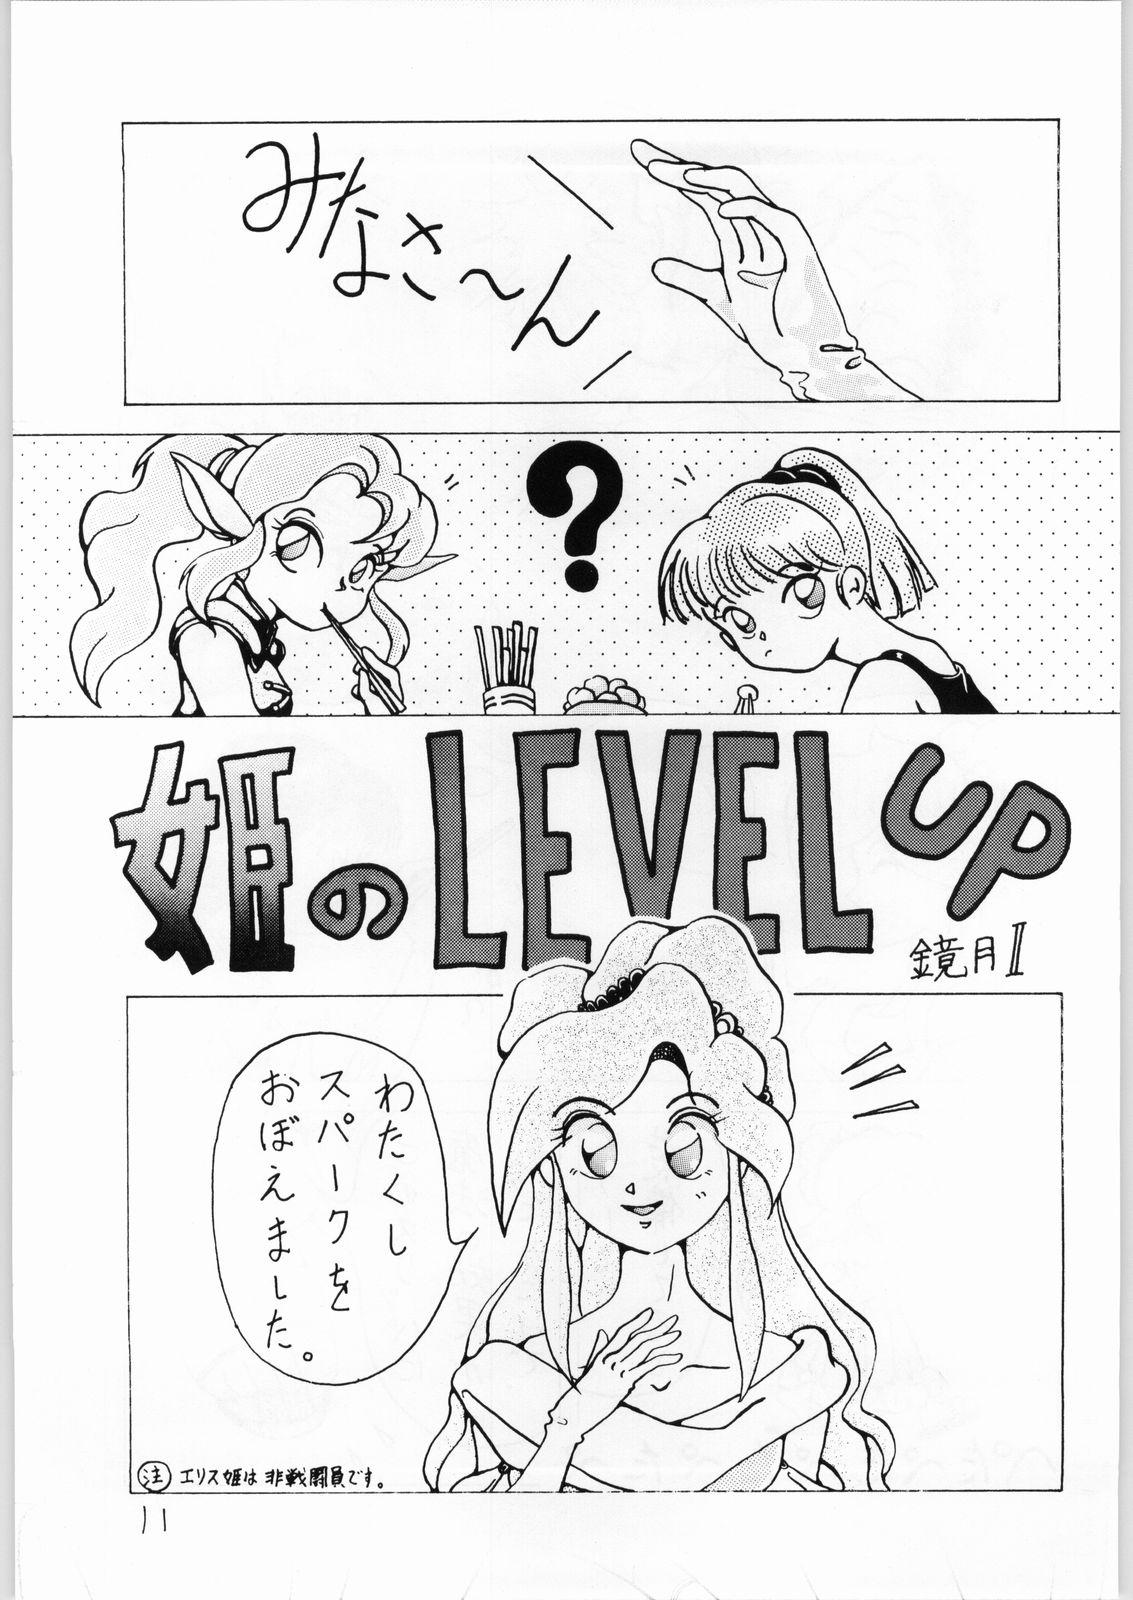 This Dance of Princess 3 - Sailor moon Tenchi muyo Akazukin cha cha Minky momo Ng knight lamune and 40 Teenager - Page 10